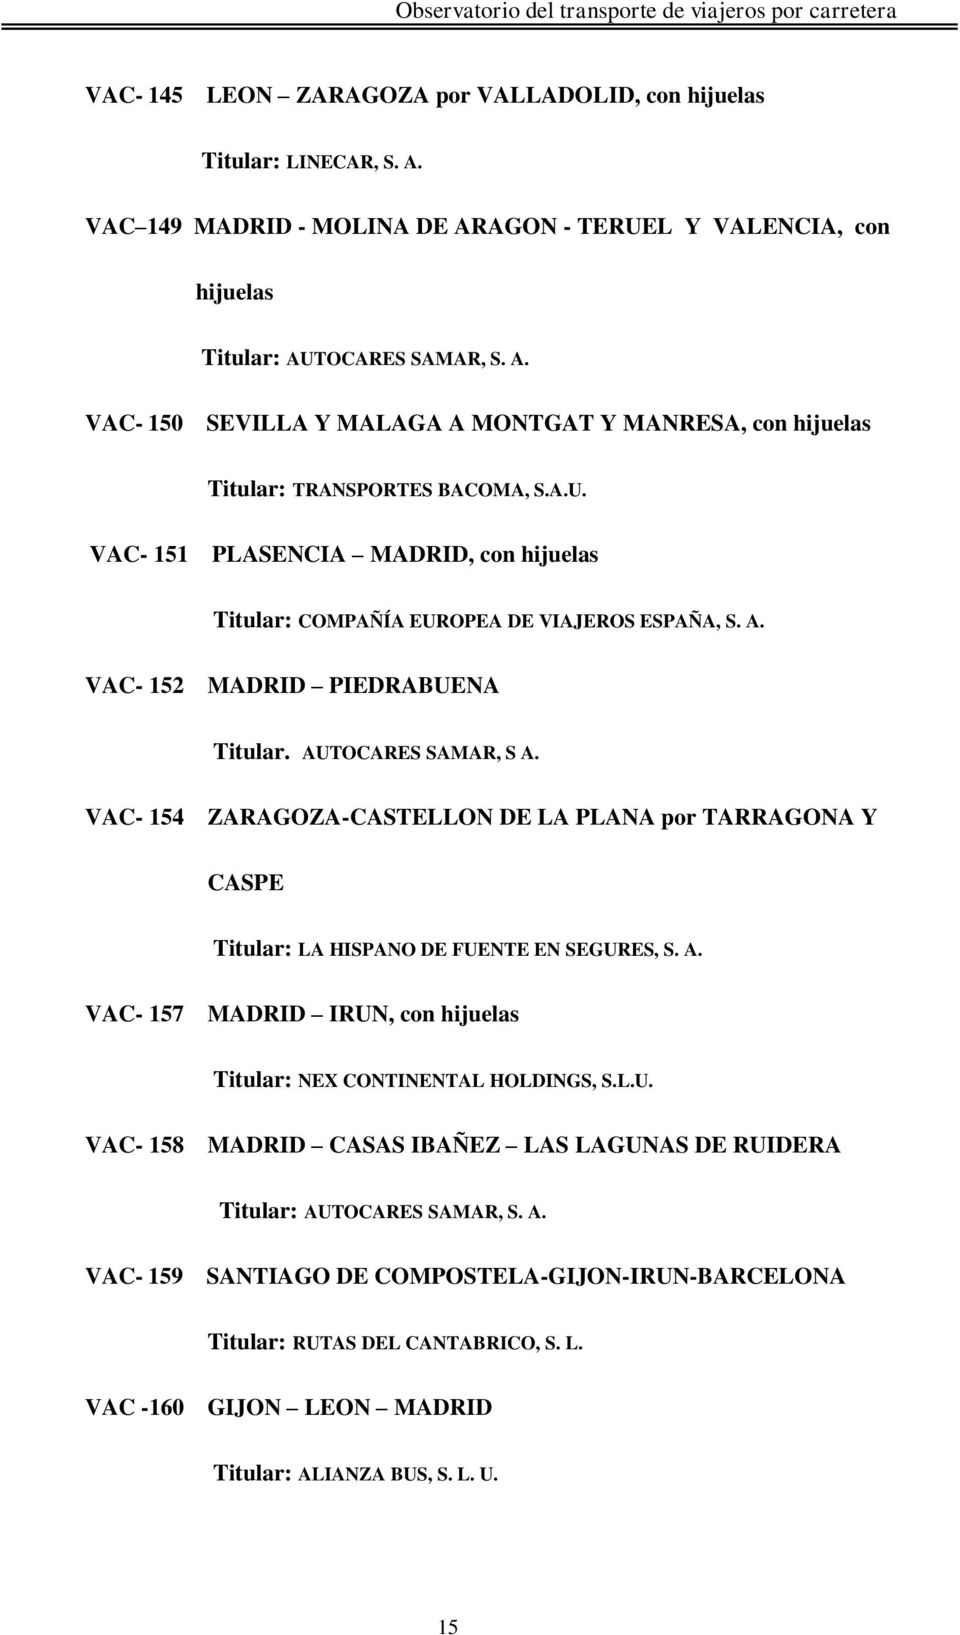 VAC- 154 ZARAGOZA-CASTELLON DE LA PLANA por TARRAGONA Y CASPE Titular: LA HISPANO DE FUENTE EN SEGURES, S. A. VAC- 157 MADRID IRUN, con hijuelas Titular: NEX CONTINENTAL HOLDINGS, S.L.U. VAC- 158 MADRID CASAS IBAÑEZ LAS LAGUNAS DE RUIDERA Titular: AUTOCARES SAMAR, S.